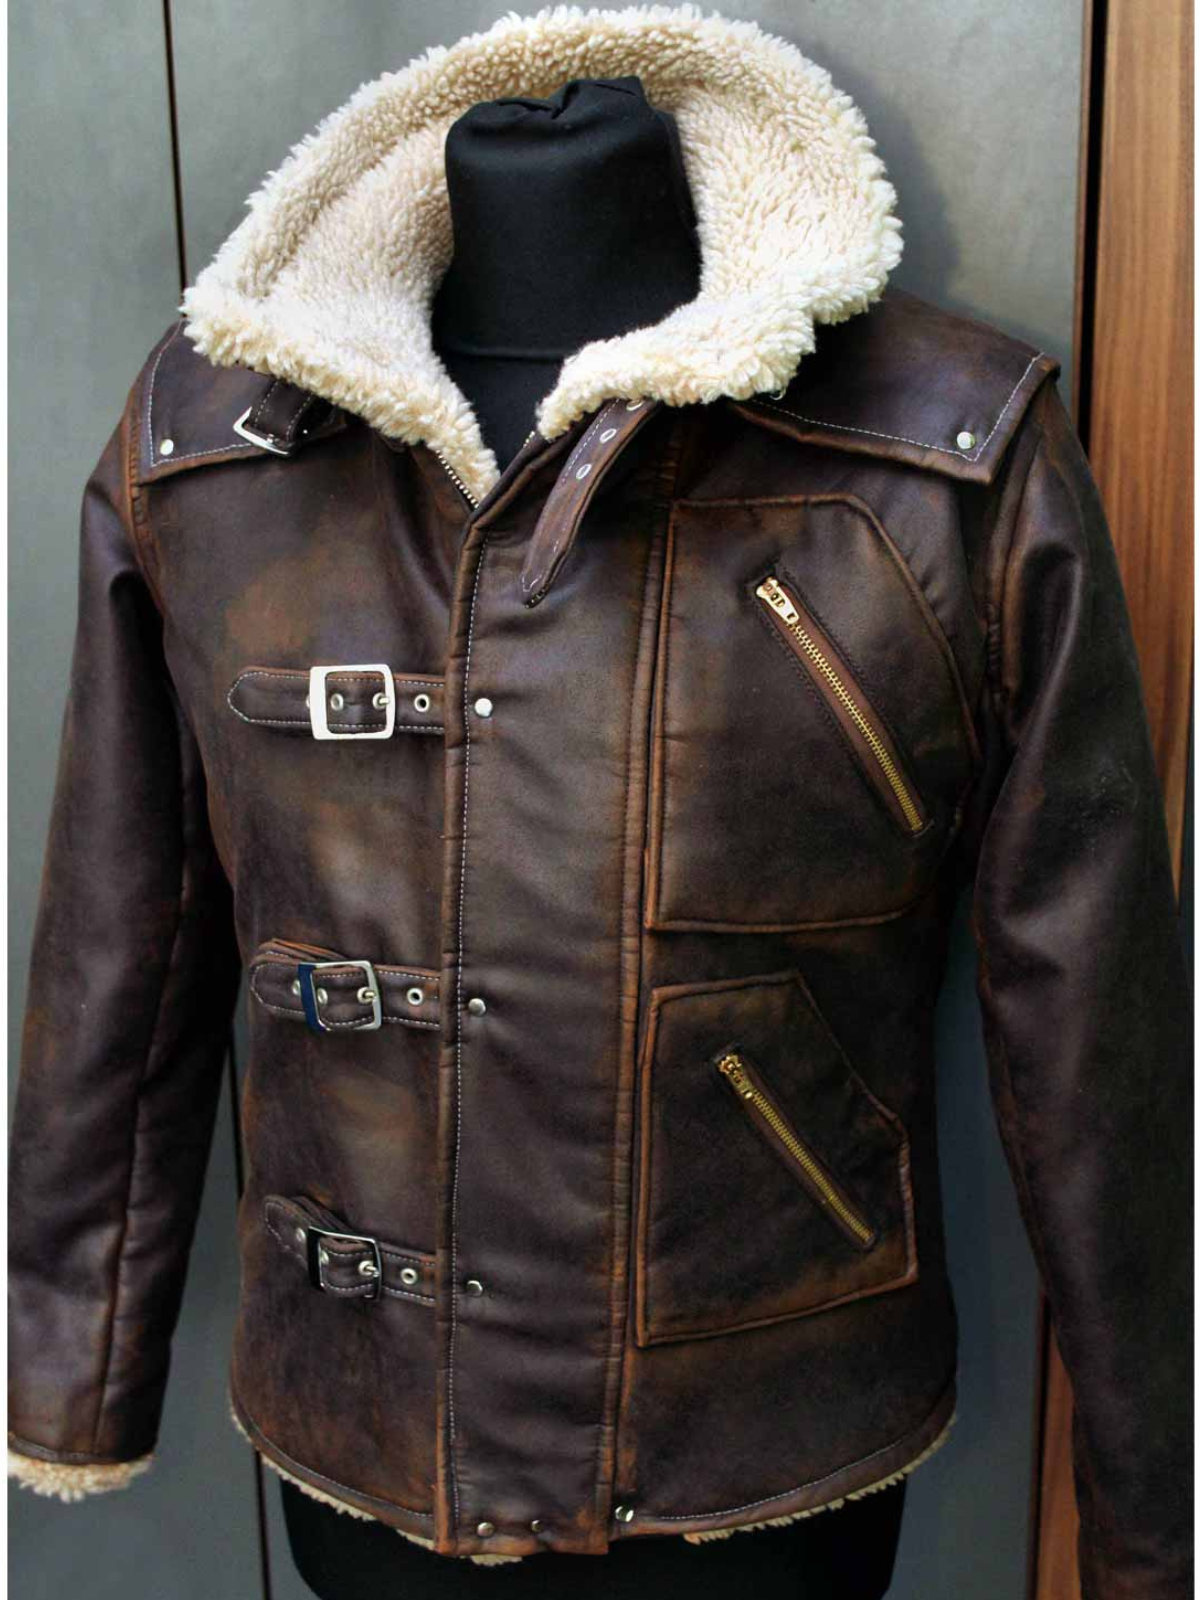 BJ Blazkowicz Wolfenstein Designer Leather Jacket